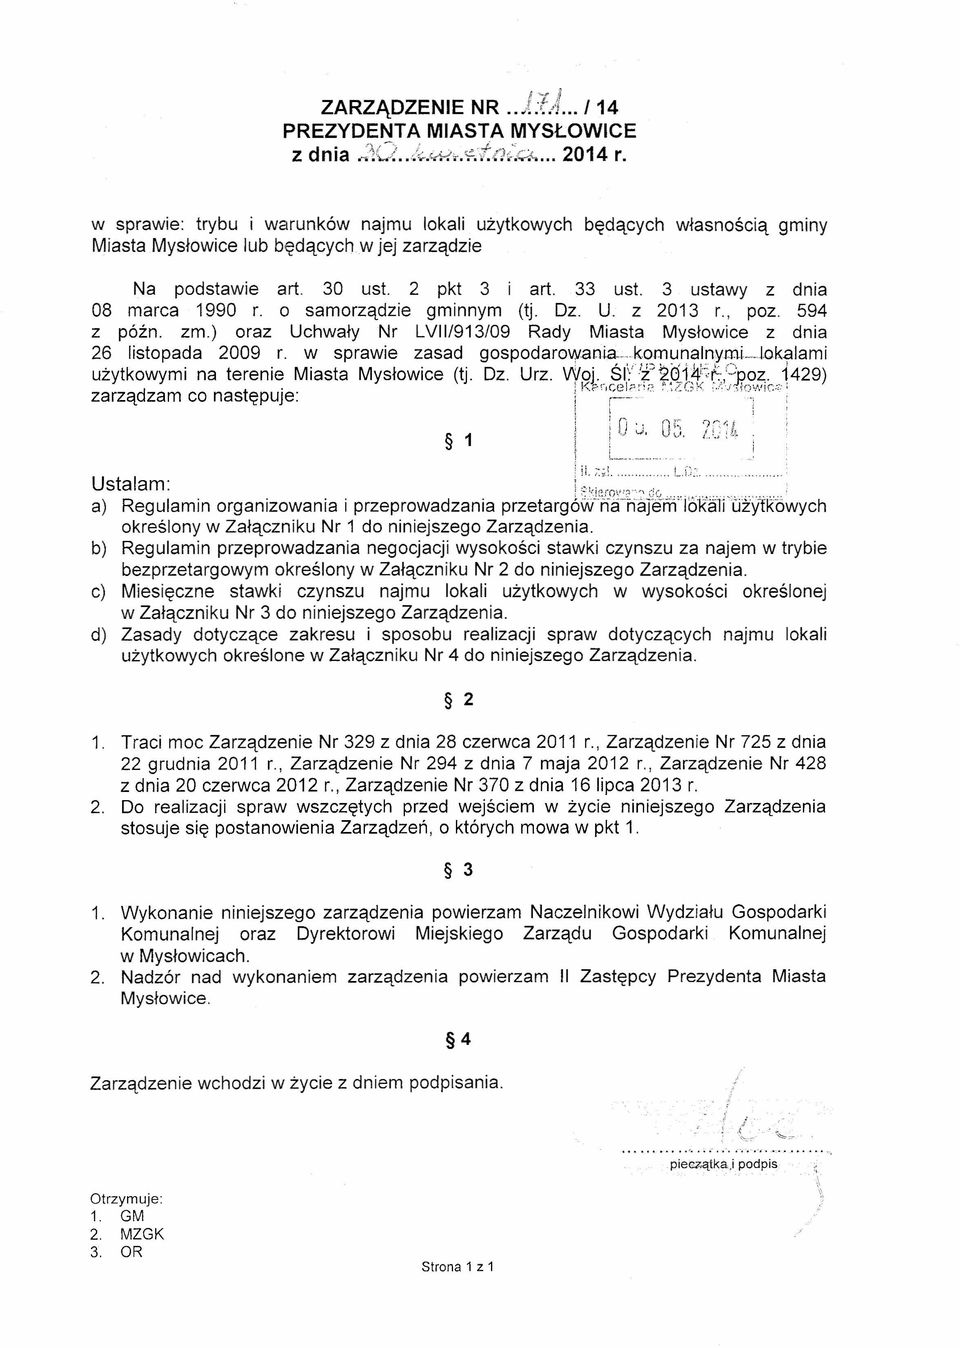 3 ustawy z dnia 08 marca 1990 r. o samorządzie gminnym (tj. Oz, U, z 2013 r., poz. 594 z późno zrn.) oraz Uchwały Nr LVII/913/09 Rady Miasta Mysłowice z dnia 26 listopada 2009 r.